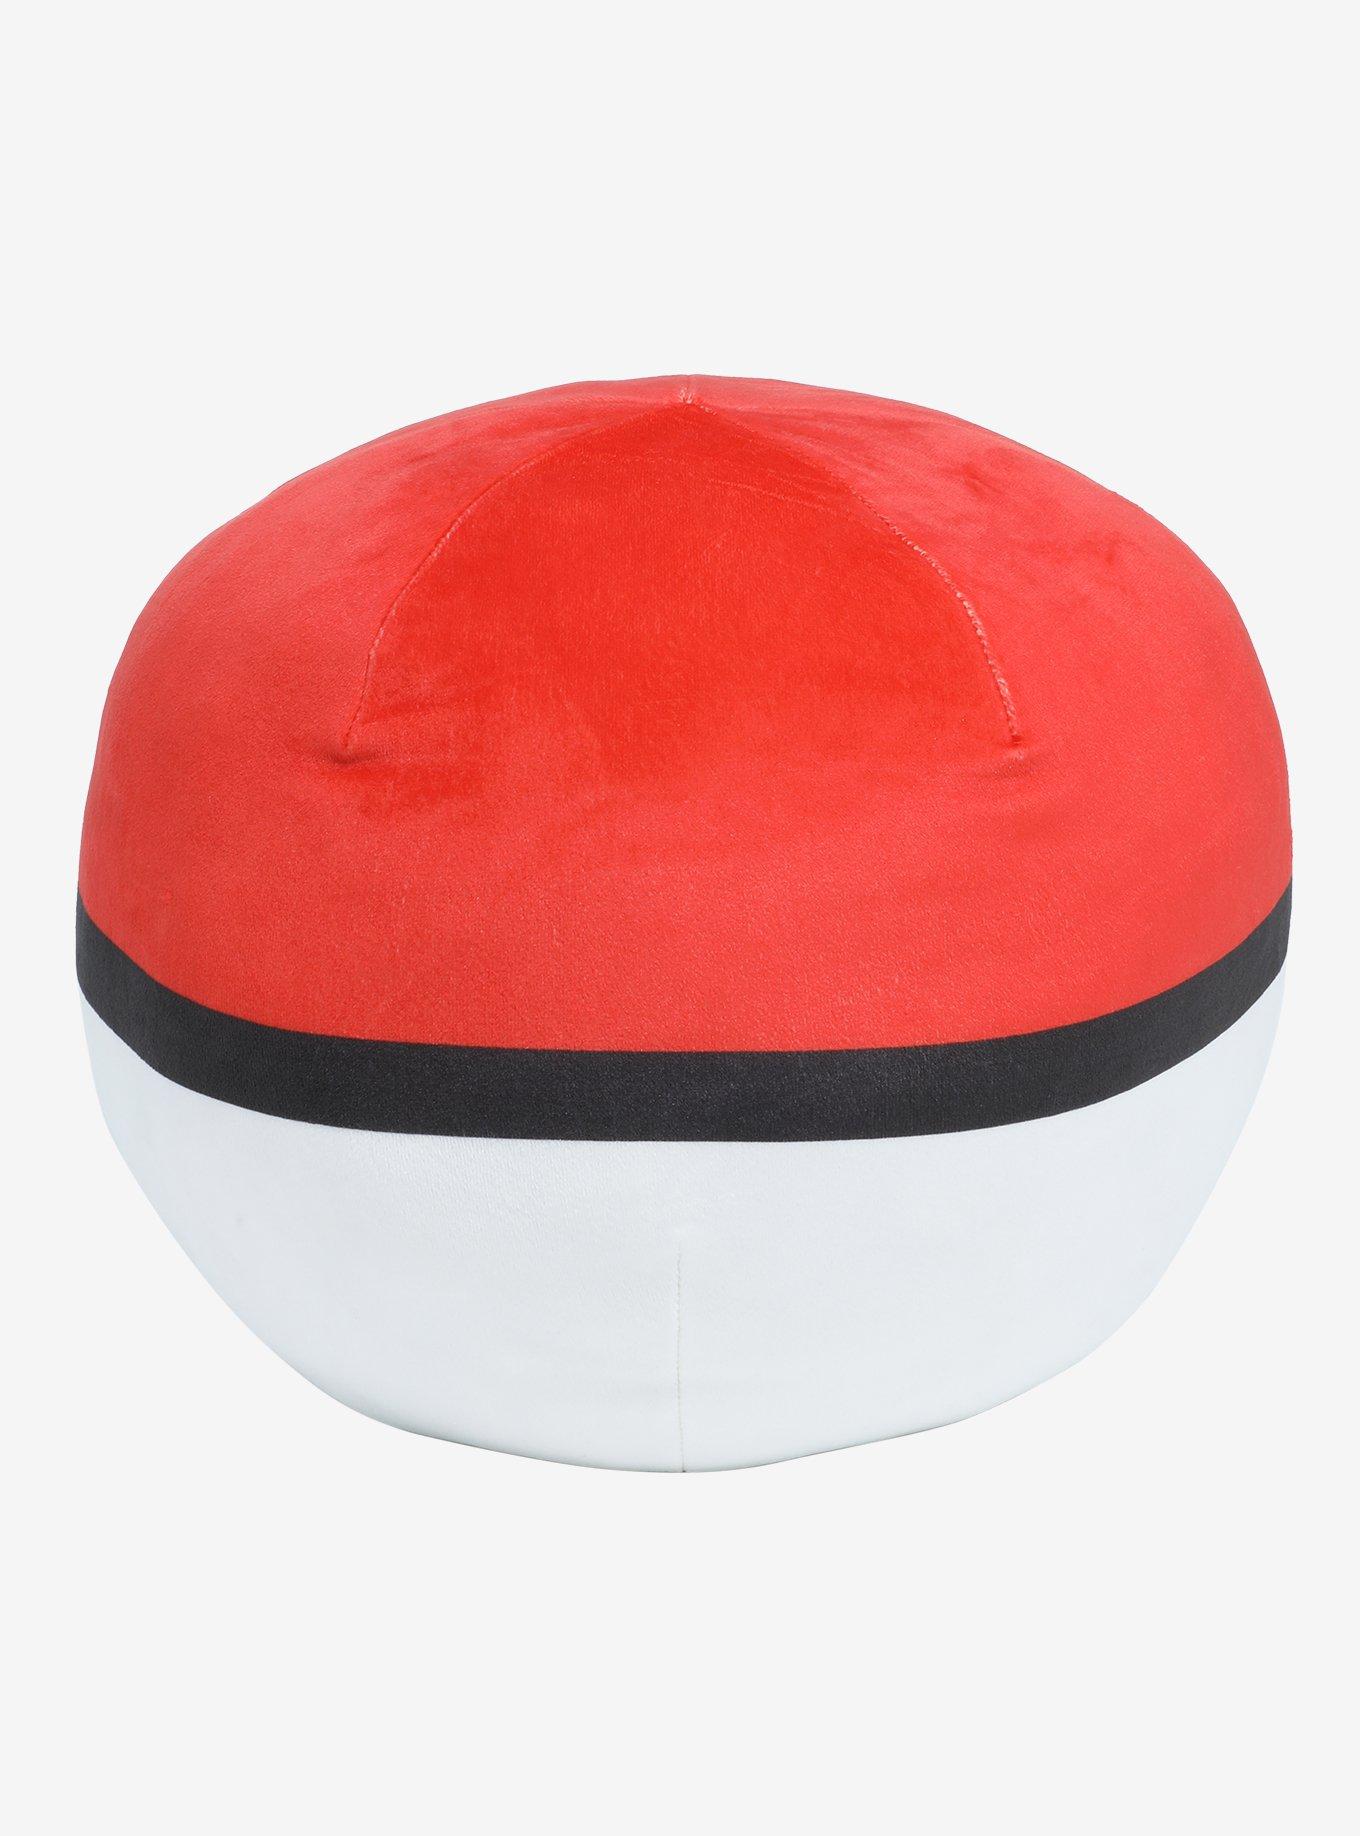 Pokemon Poke Ball Cloud Pillow, , alternate